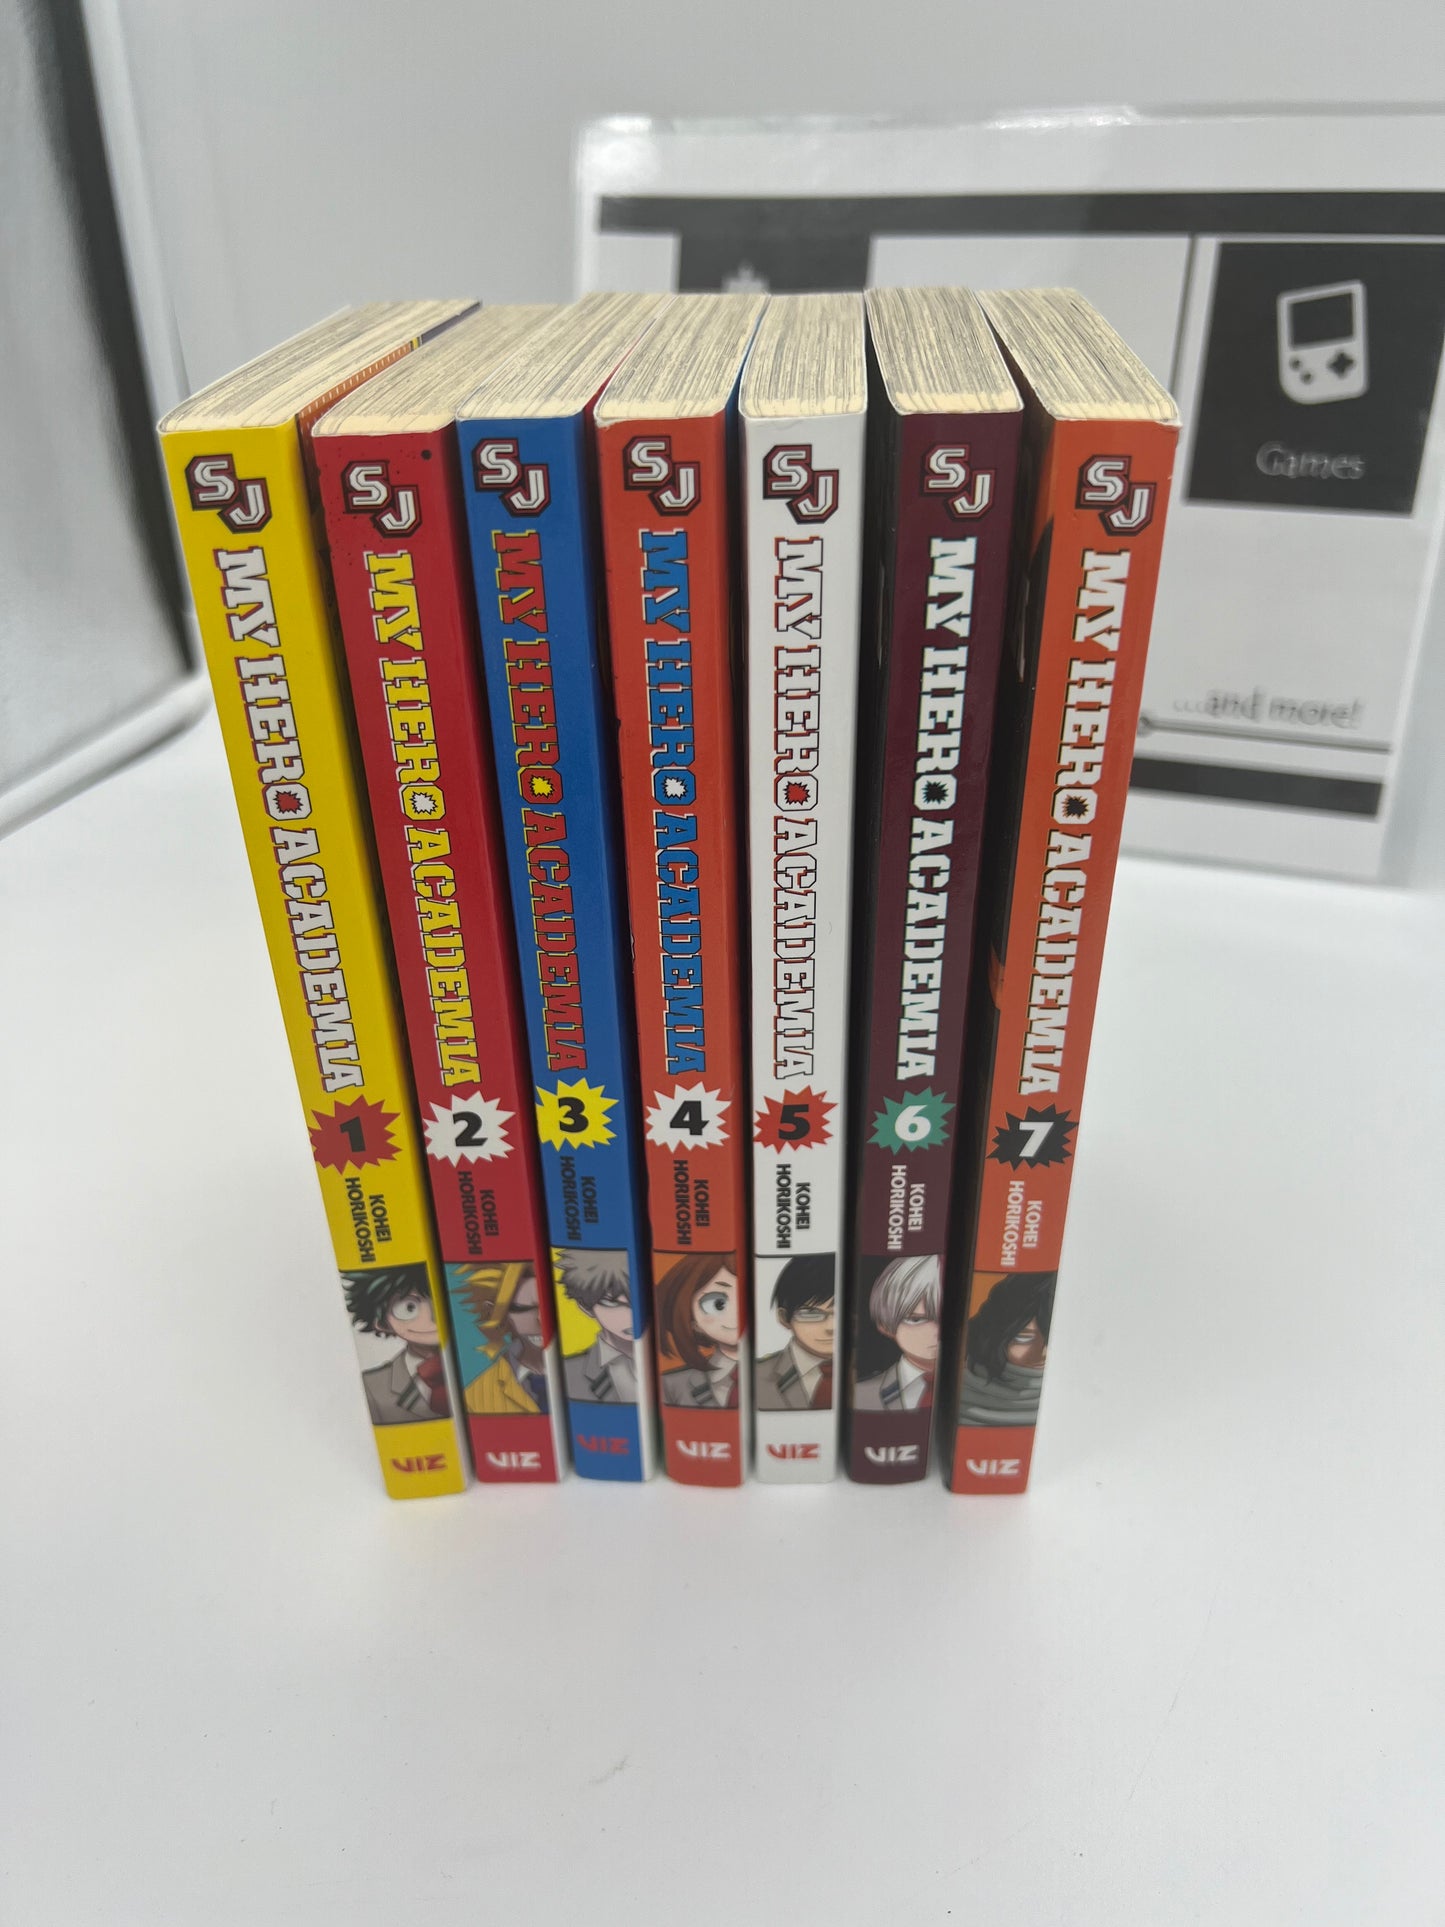 Manga Comic Book Bundle My Hero Academia By Kohei Horikoshi Vol 1-7